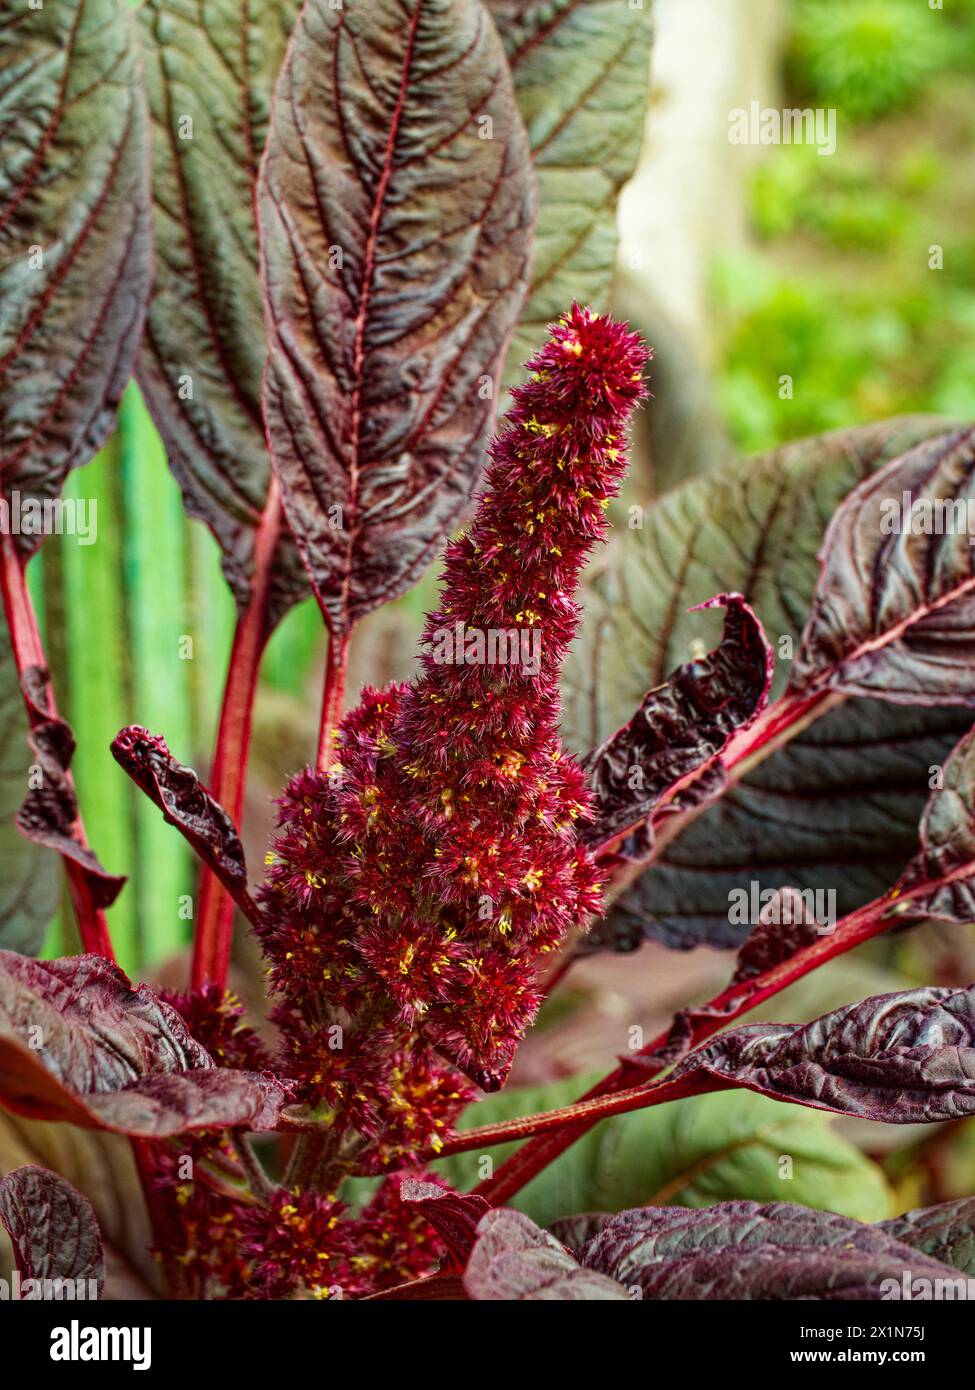 Eine lebendige Darstellung einer roten Blumenstruktur inmitten kontrastierender dunkler Blätter, die ein Gefühl von Wachstum ausstrahlen. Stockfoto